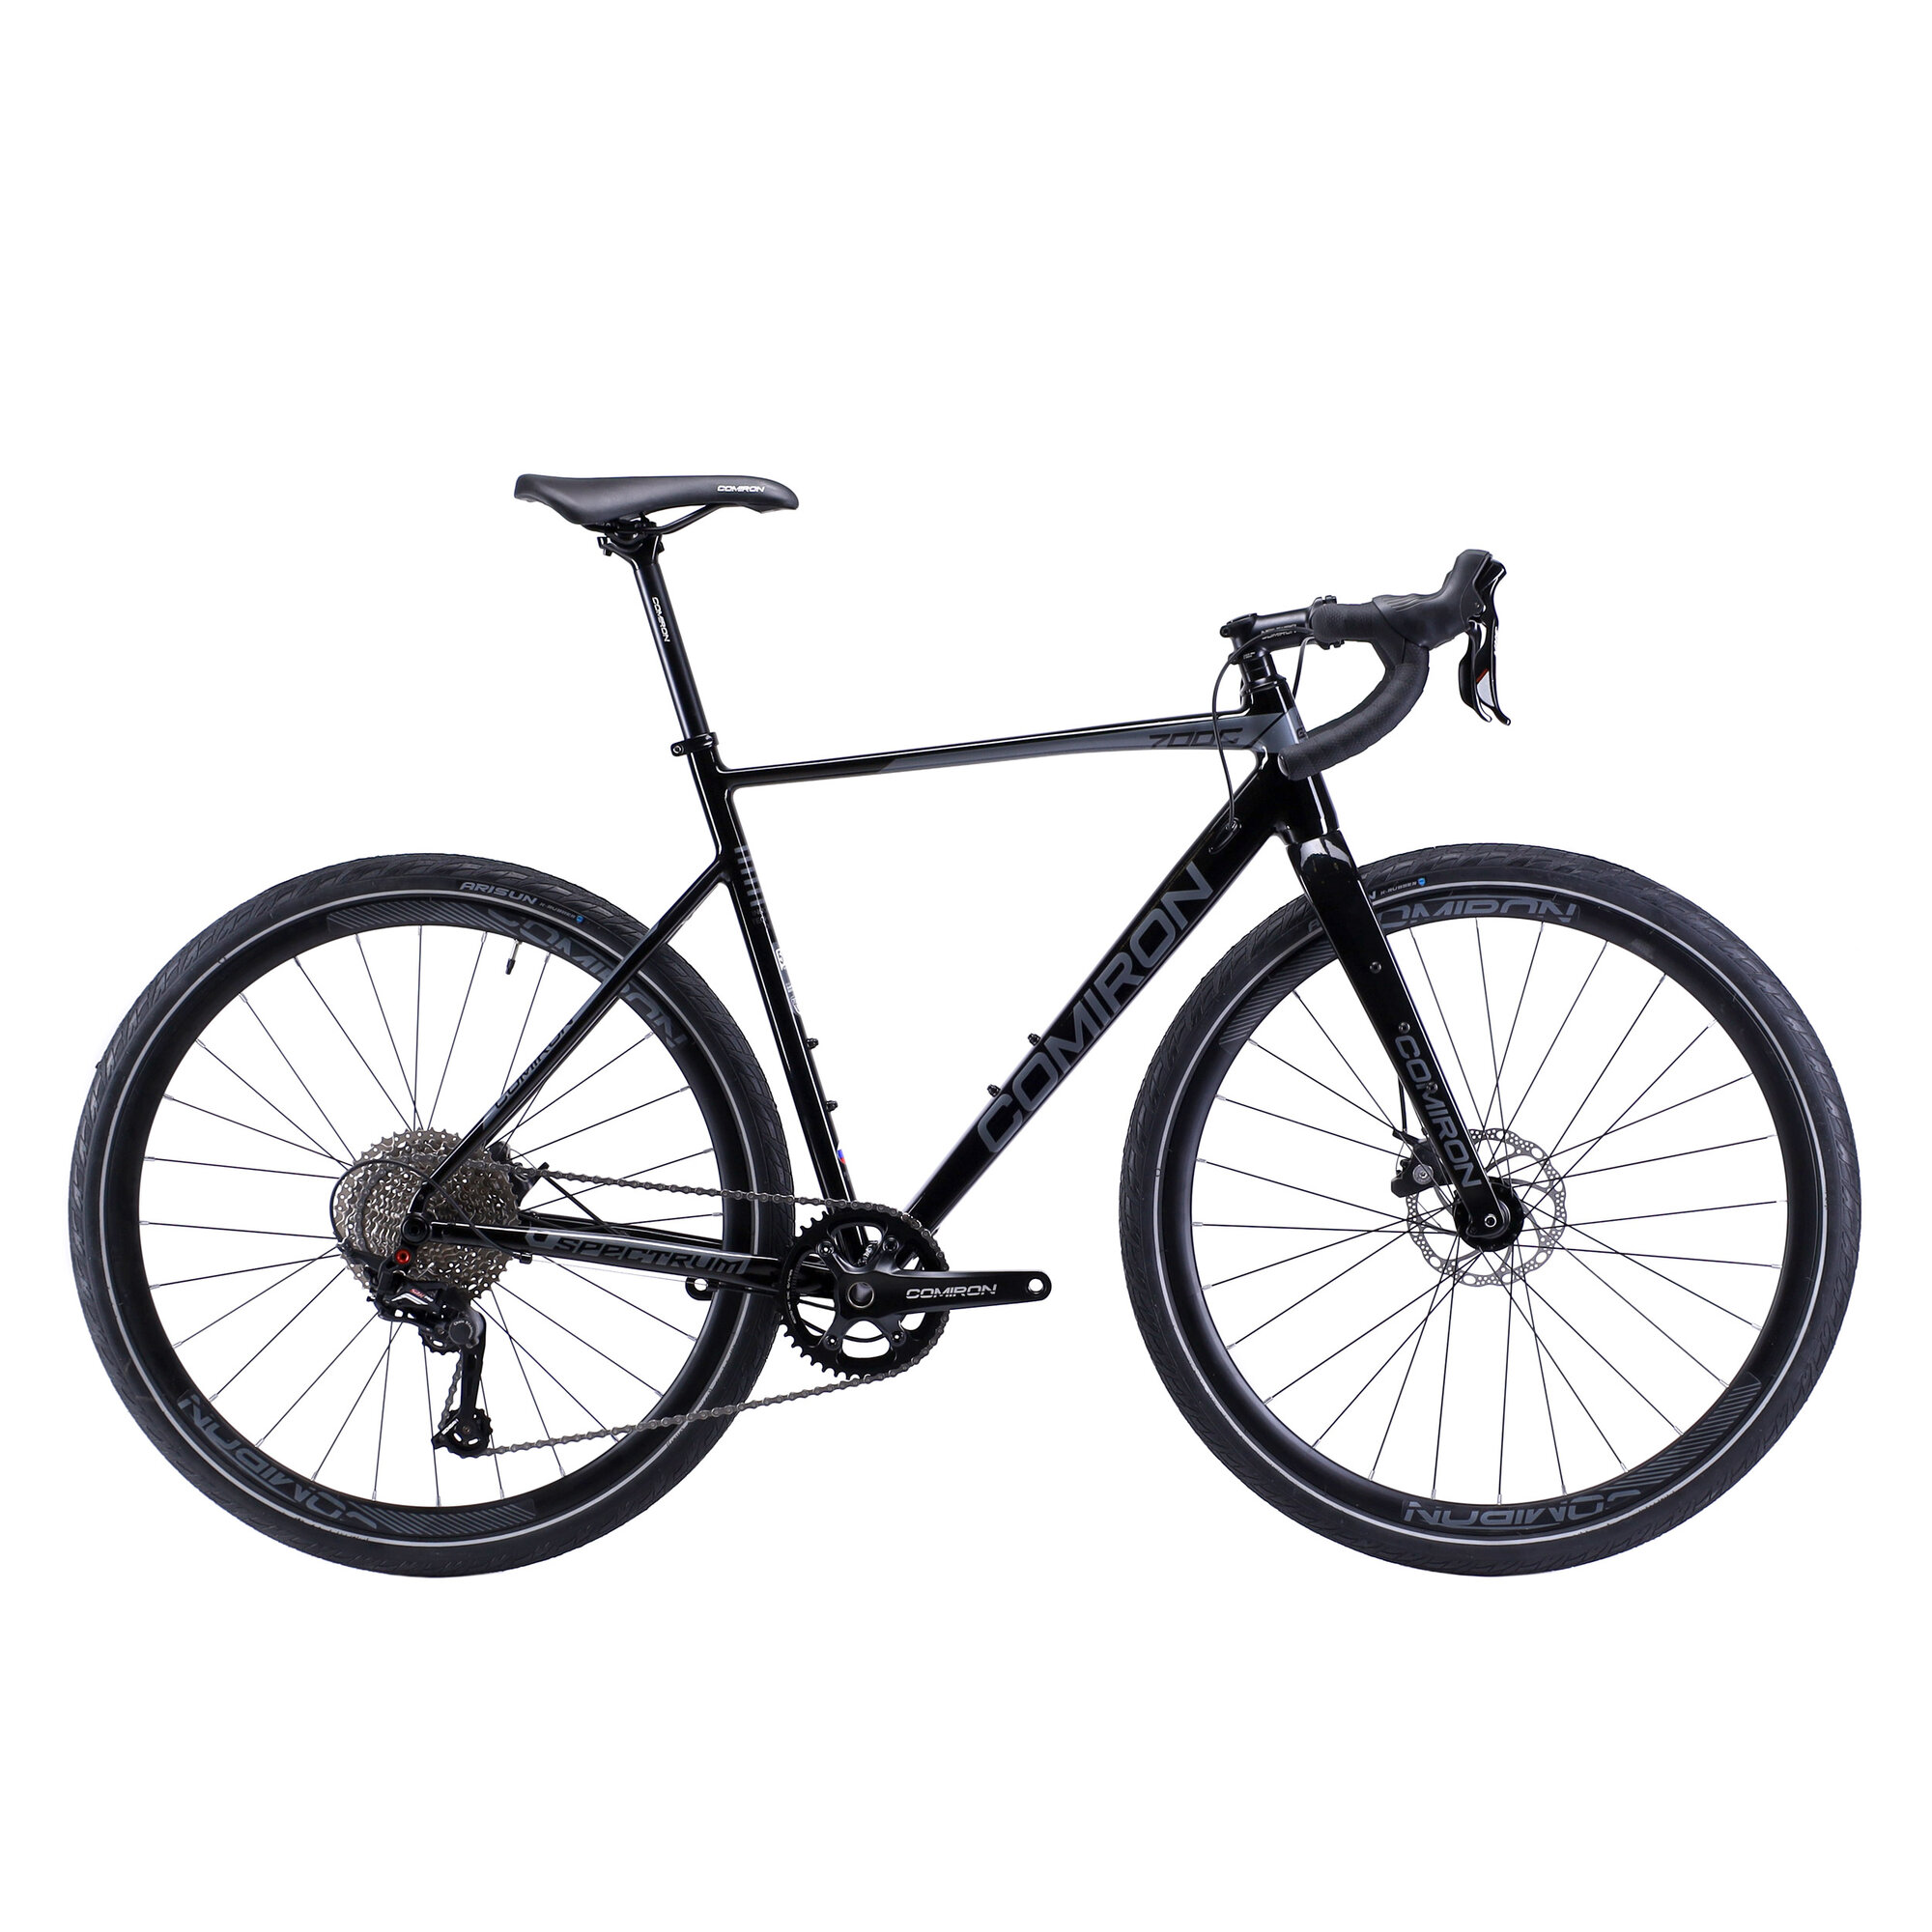 Велосипед GRAVEL COMIRON SPECTRUM I 700C-540mm, карбон. вилка, на осях, 11 скоростей. цвет: черный event horizon